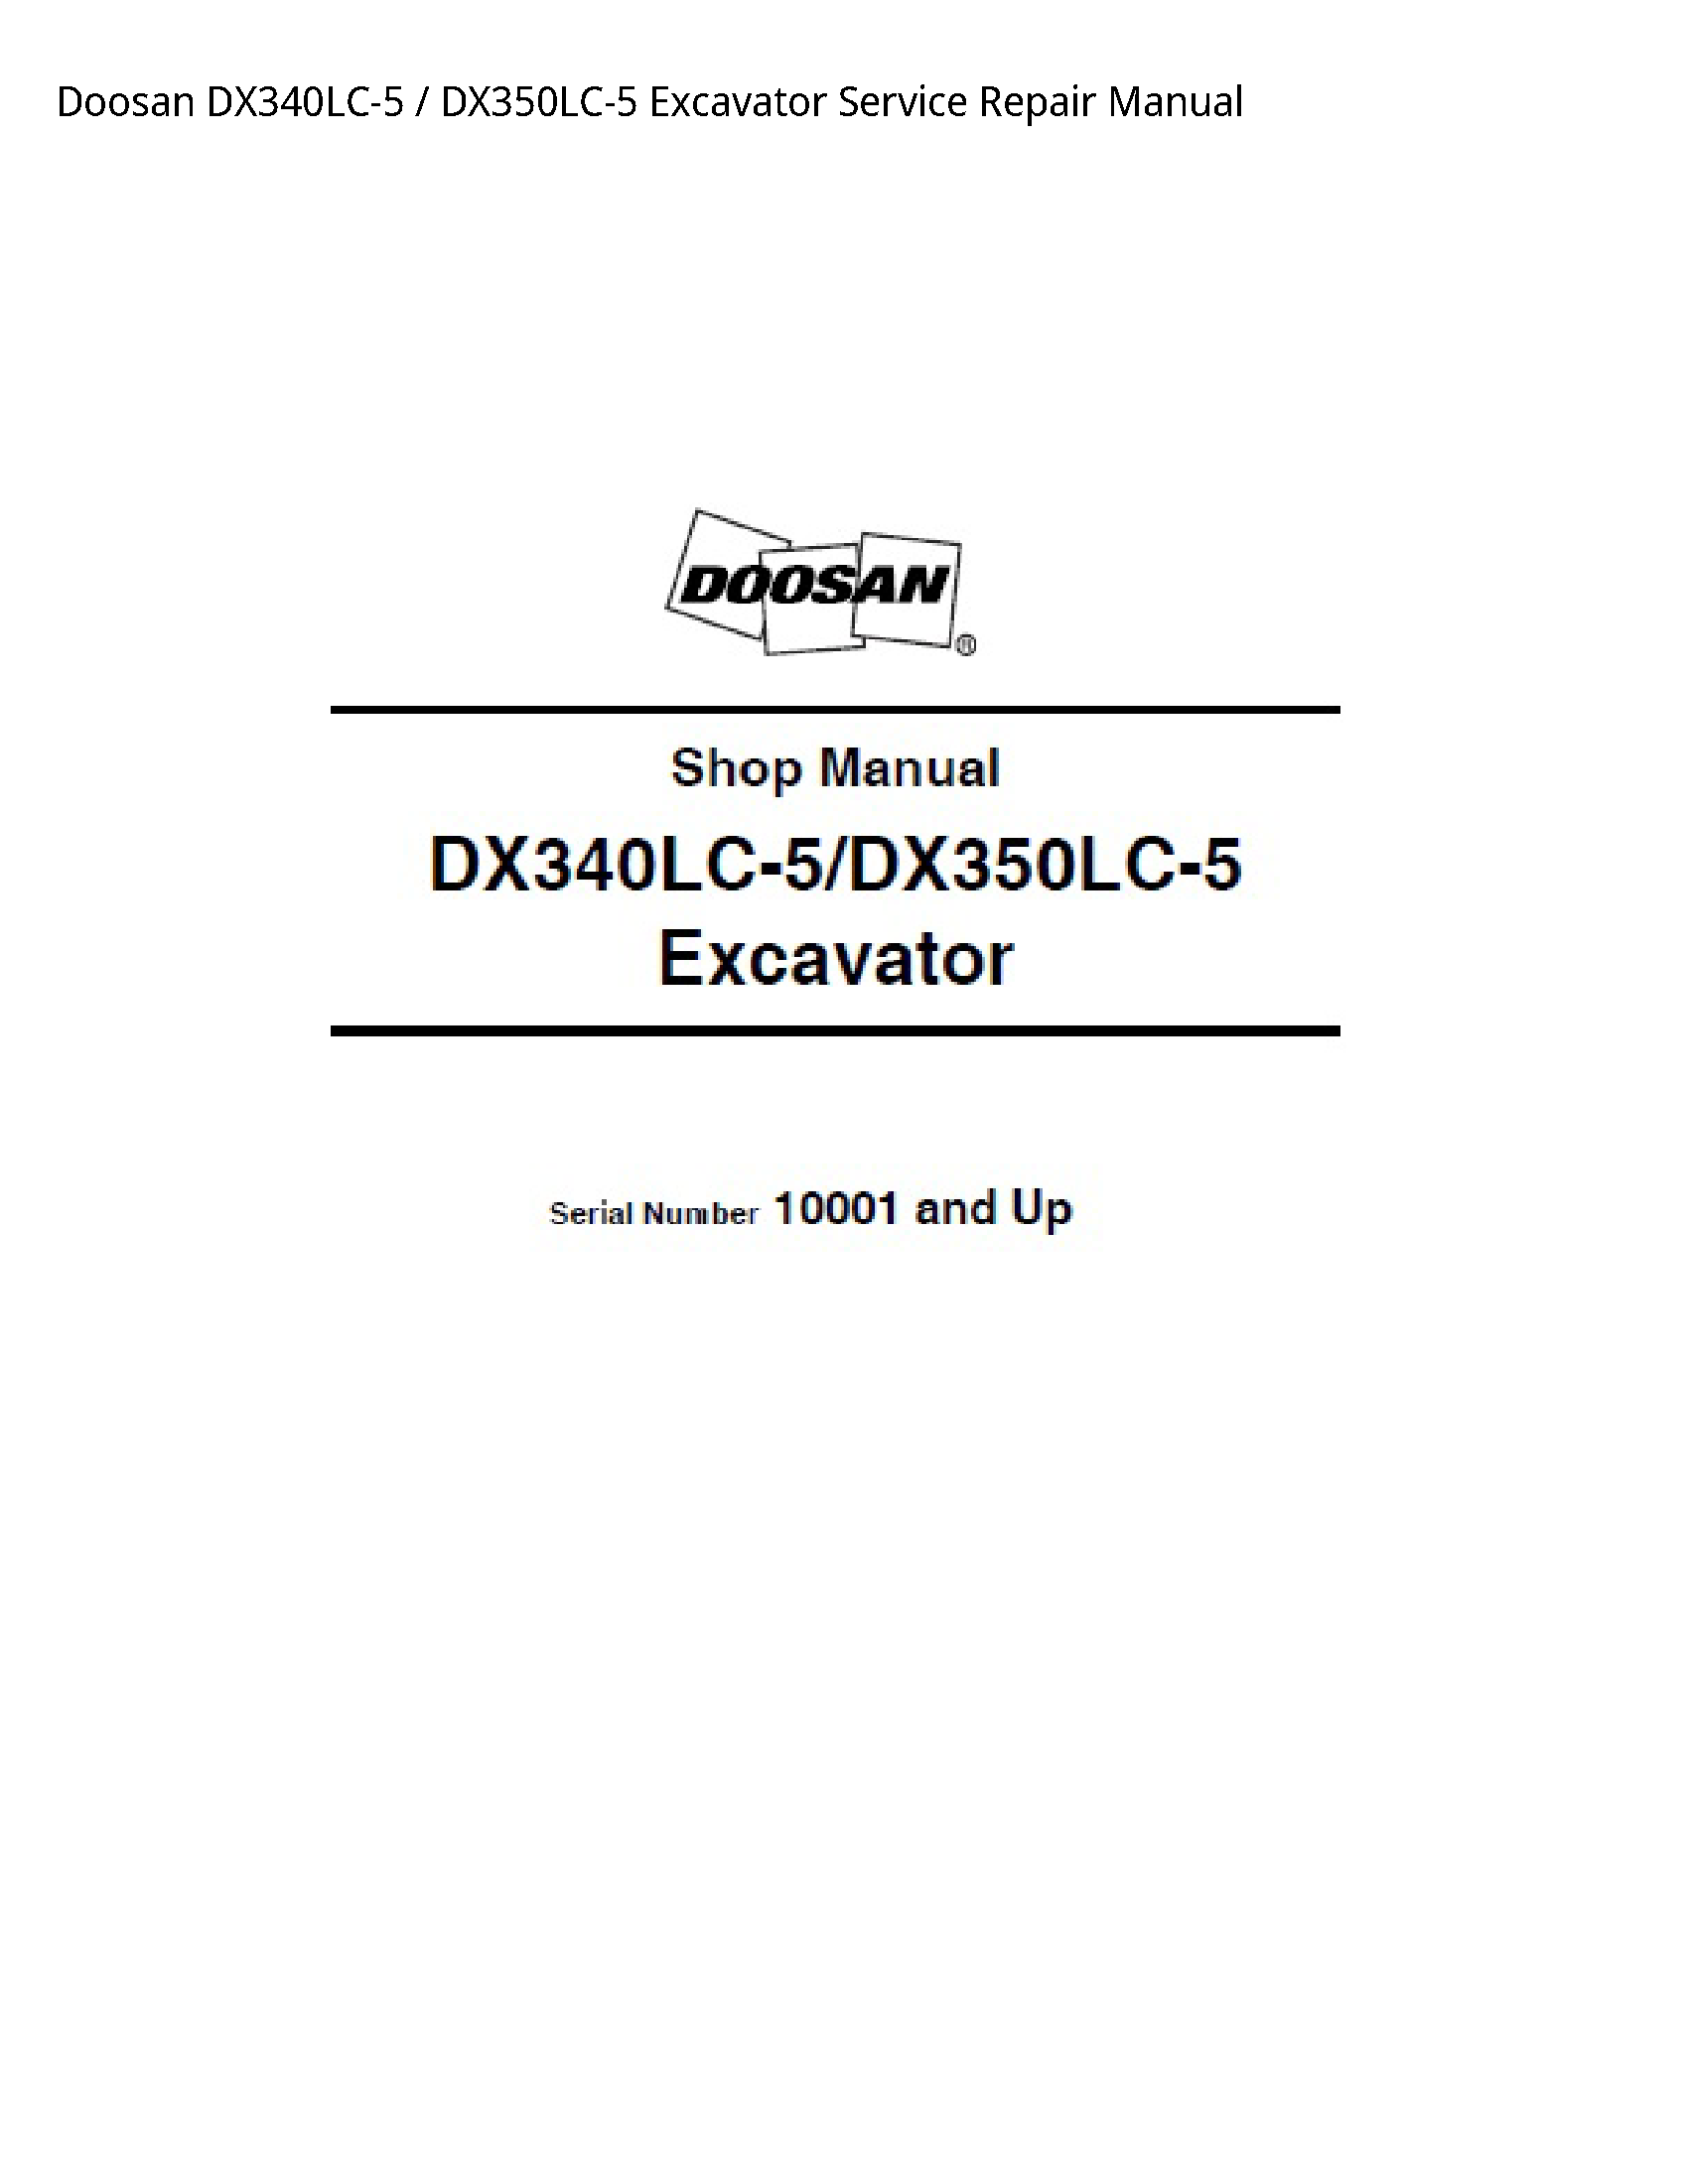 Doosan DX340LC-5 Excavator manual